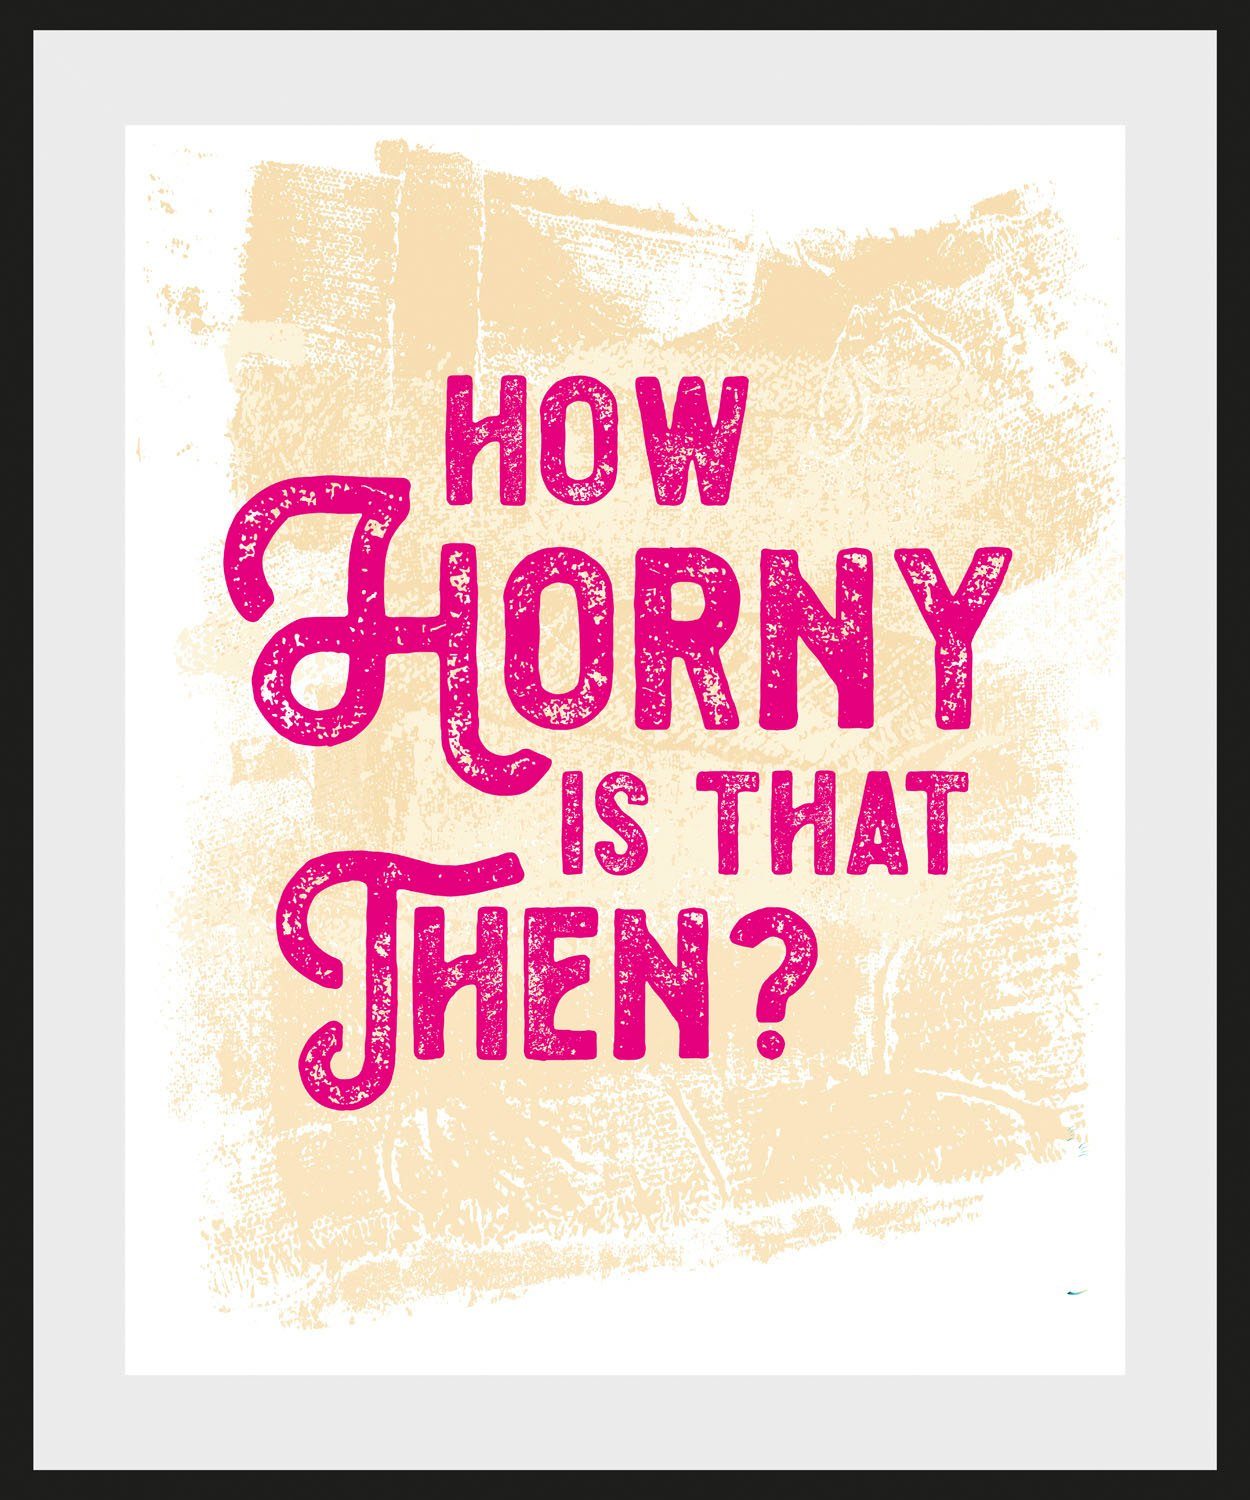 HOW THEN?, Bild Schriftzug queence IS St) pink/gelb (1 THAT HORNY